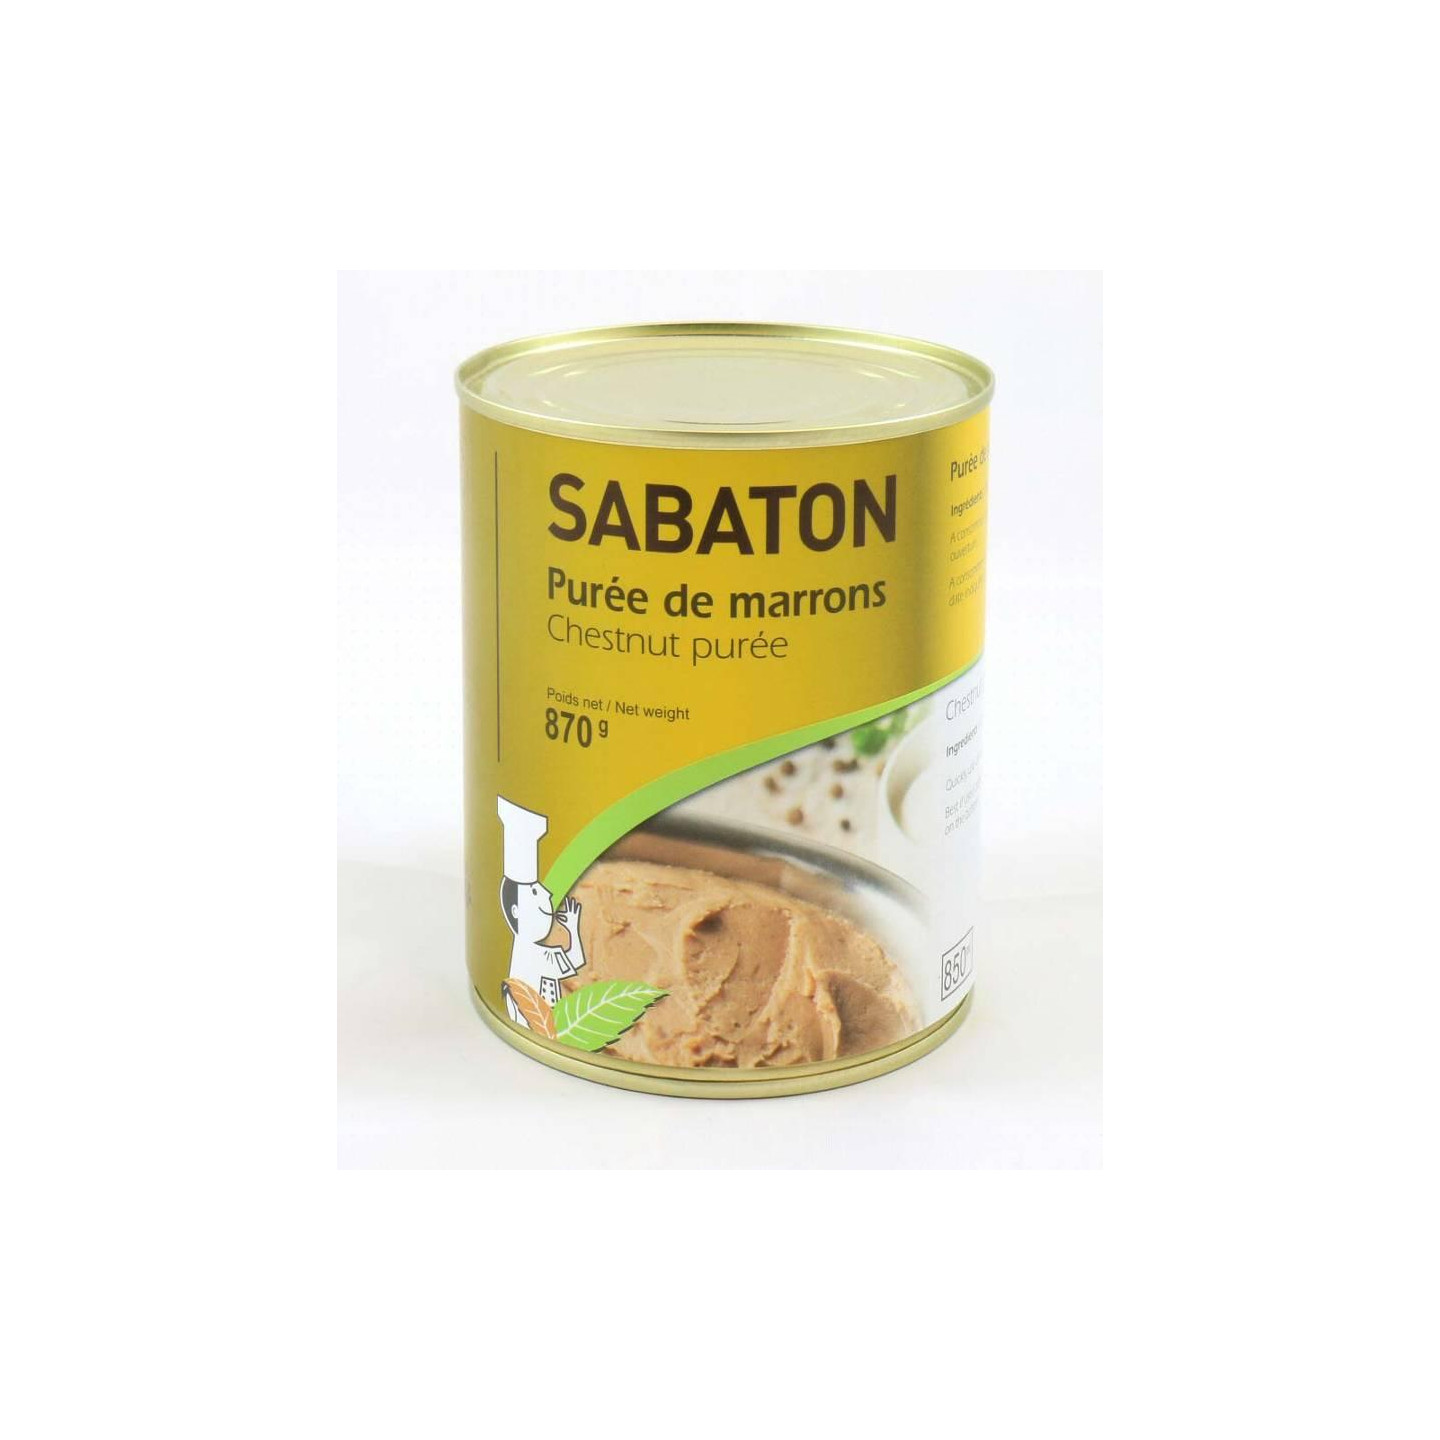 Purée de marrons 870 g - Sabaton